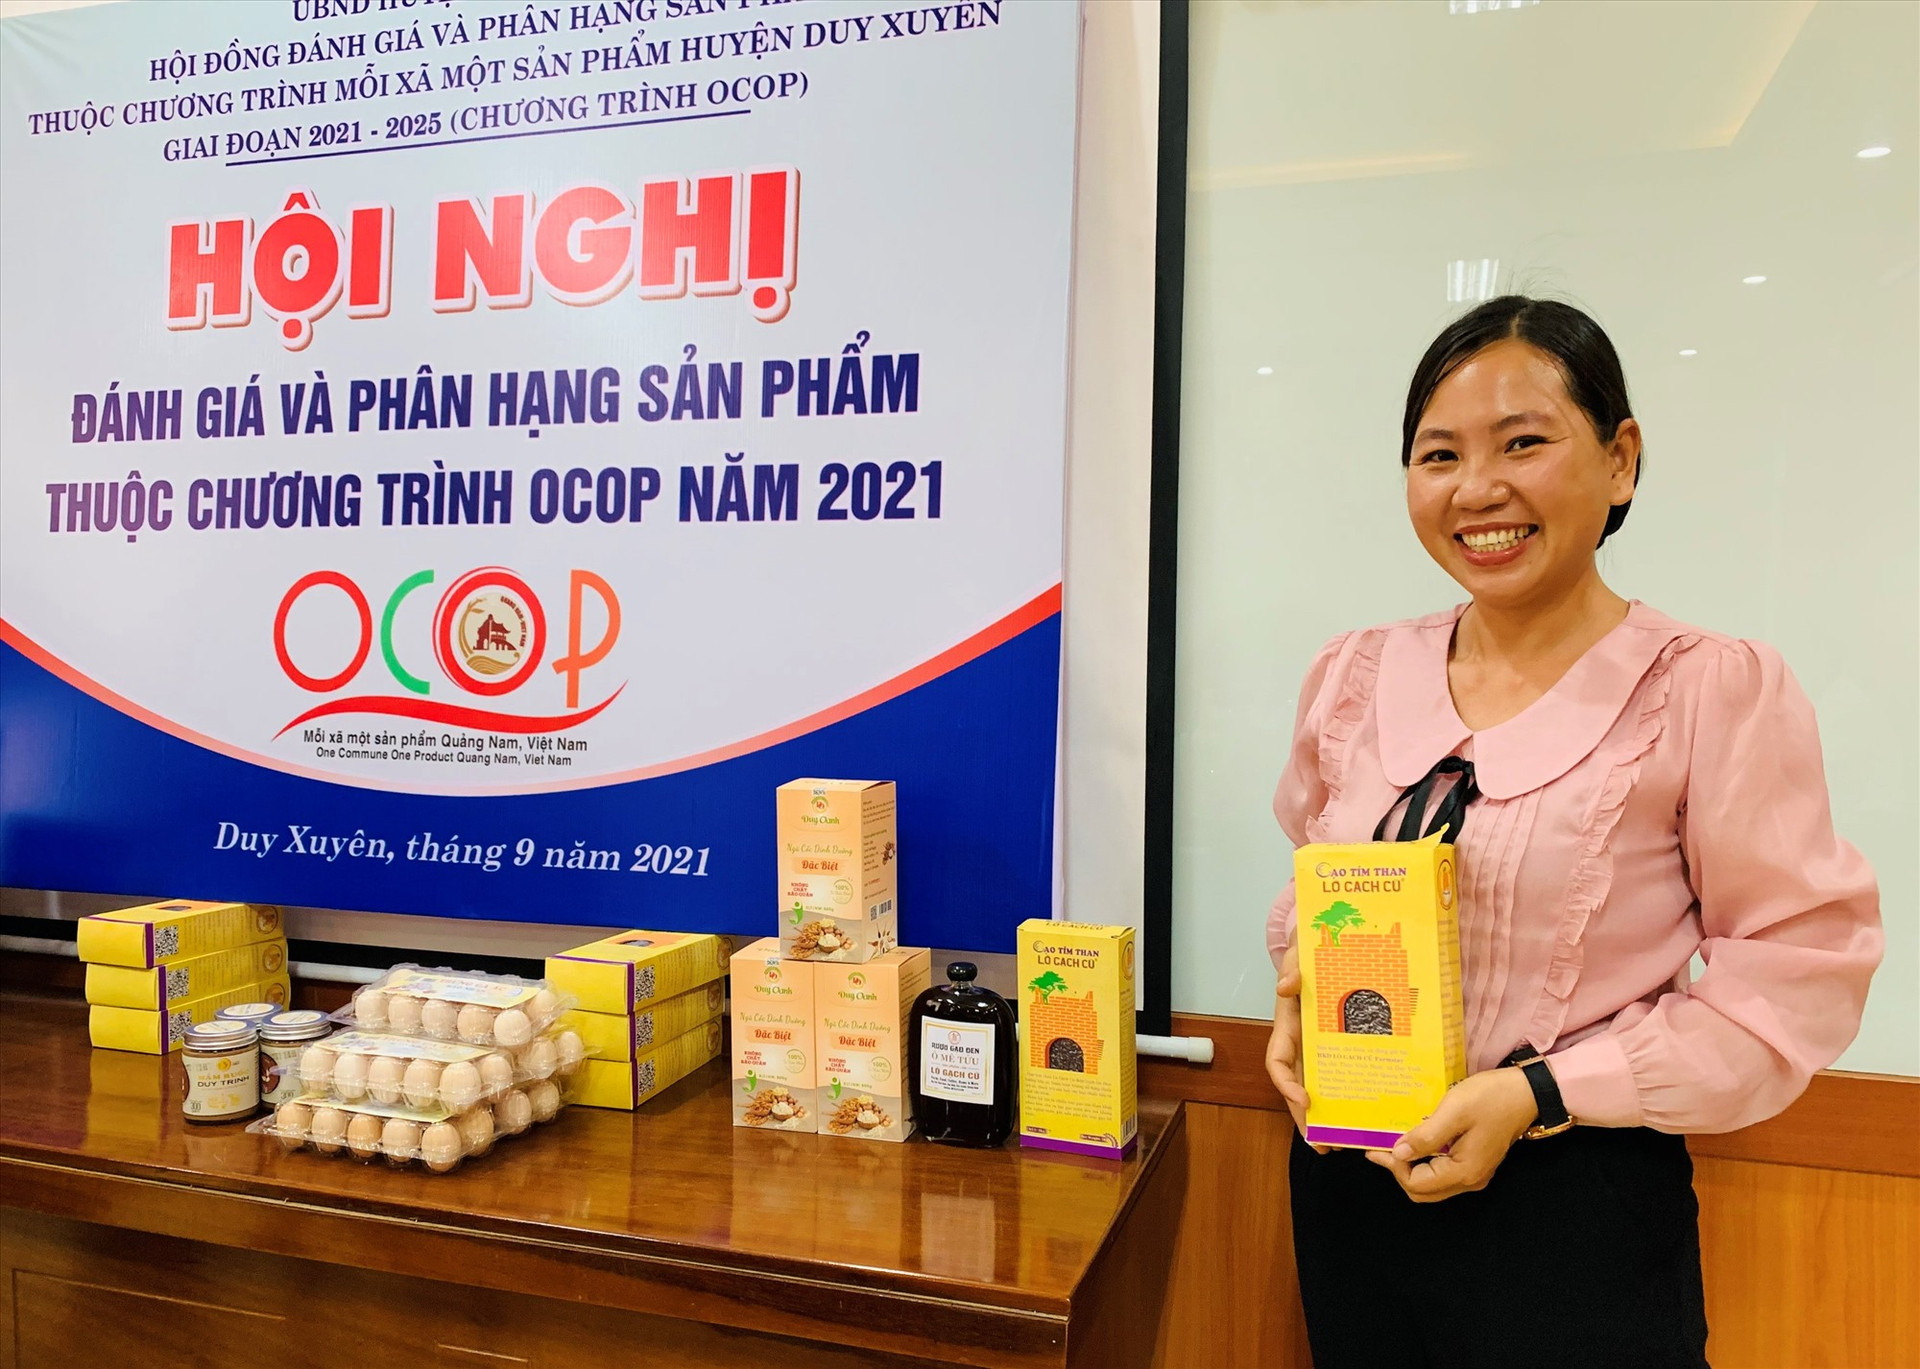 Gạo tím than của bà Lê Thị Thanh Nga vừa được UBND huyện Duy Xuyên xét chọn sản phẩm OCOP 3 sao cấp huyện năm 2021. Ảnh: T.N